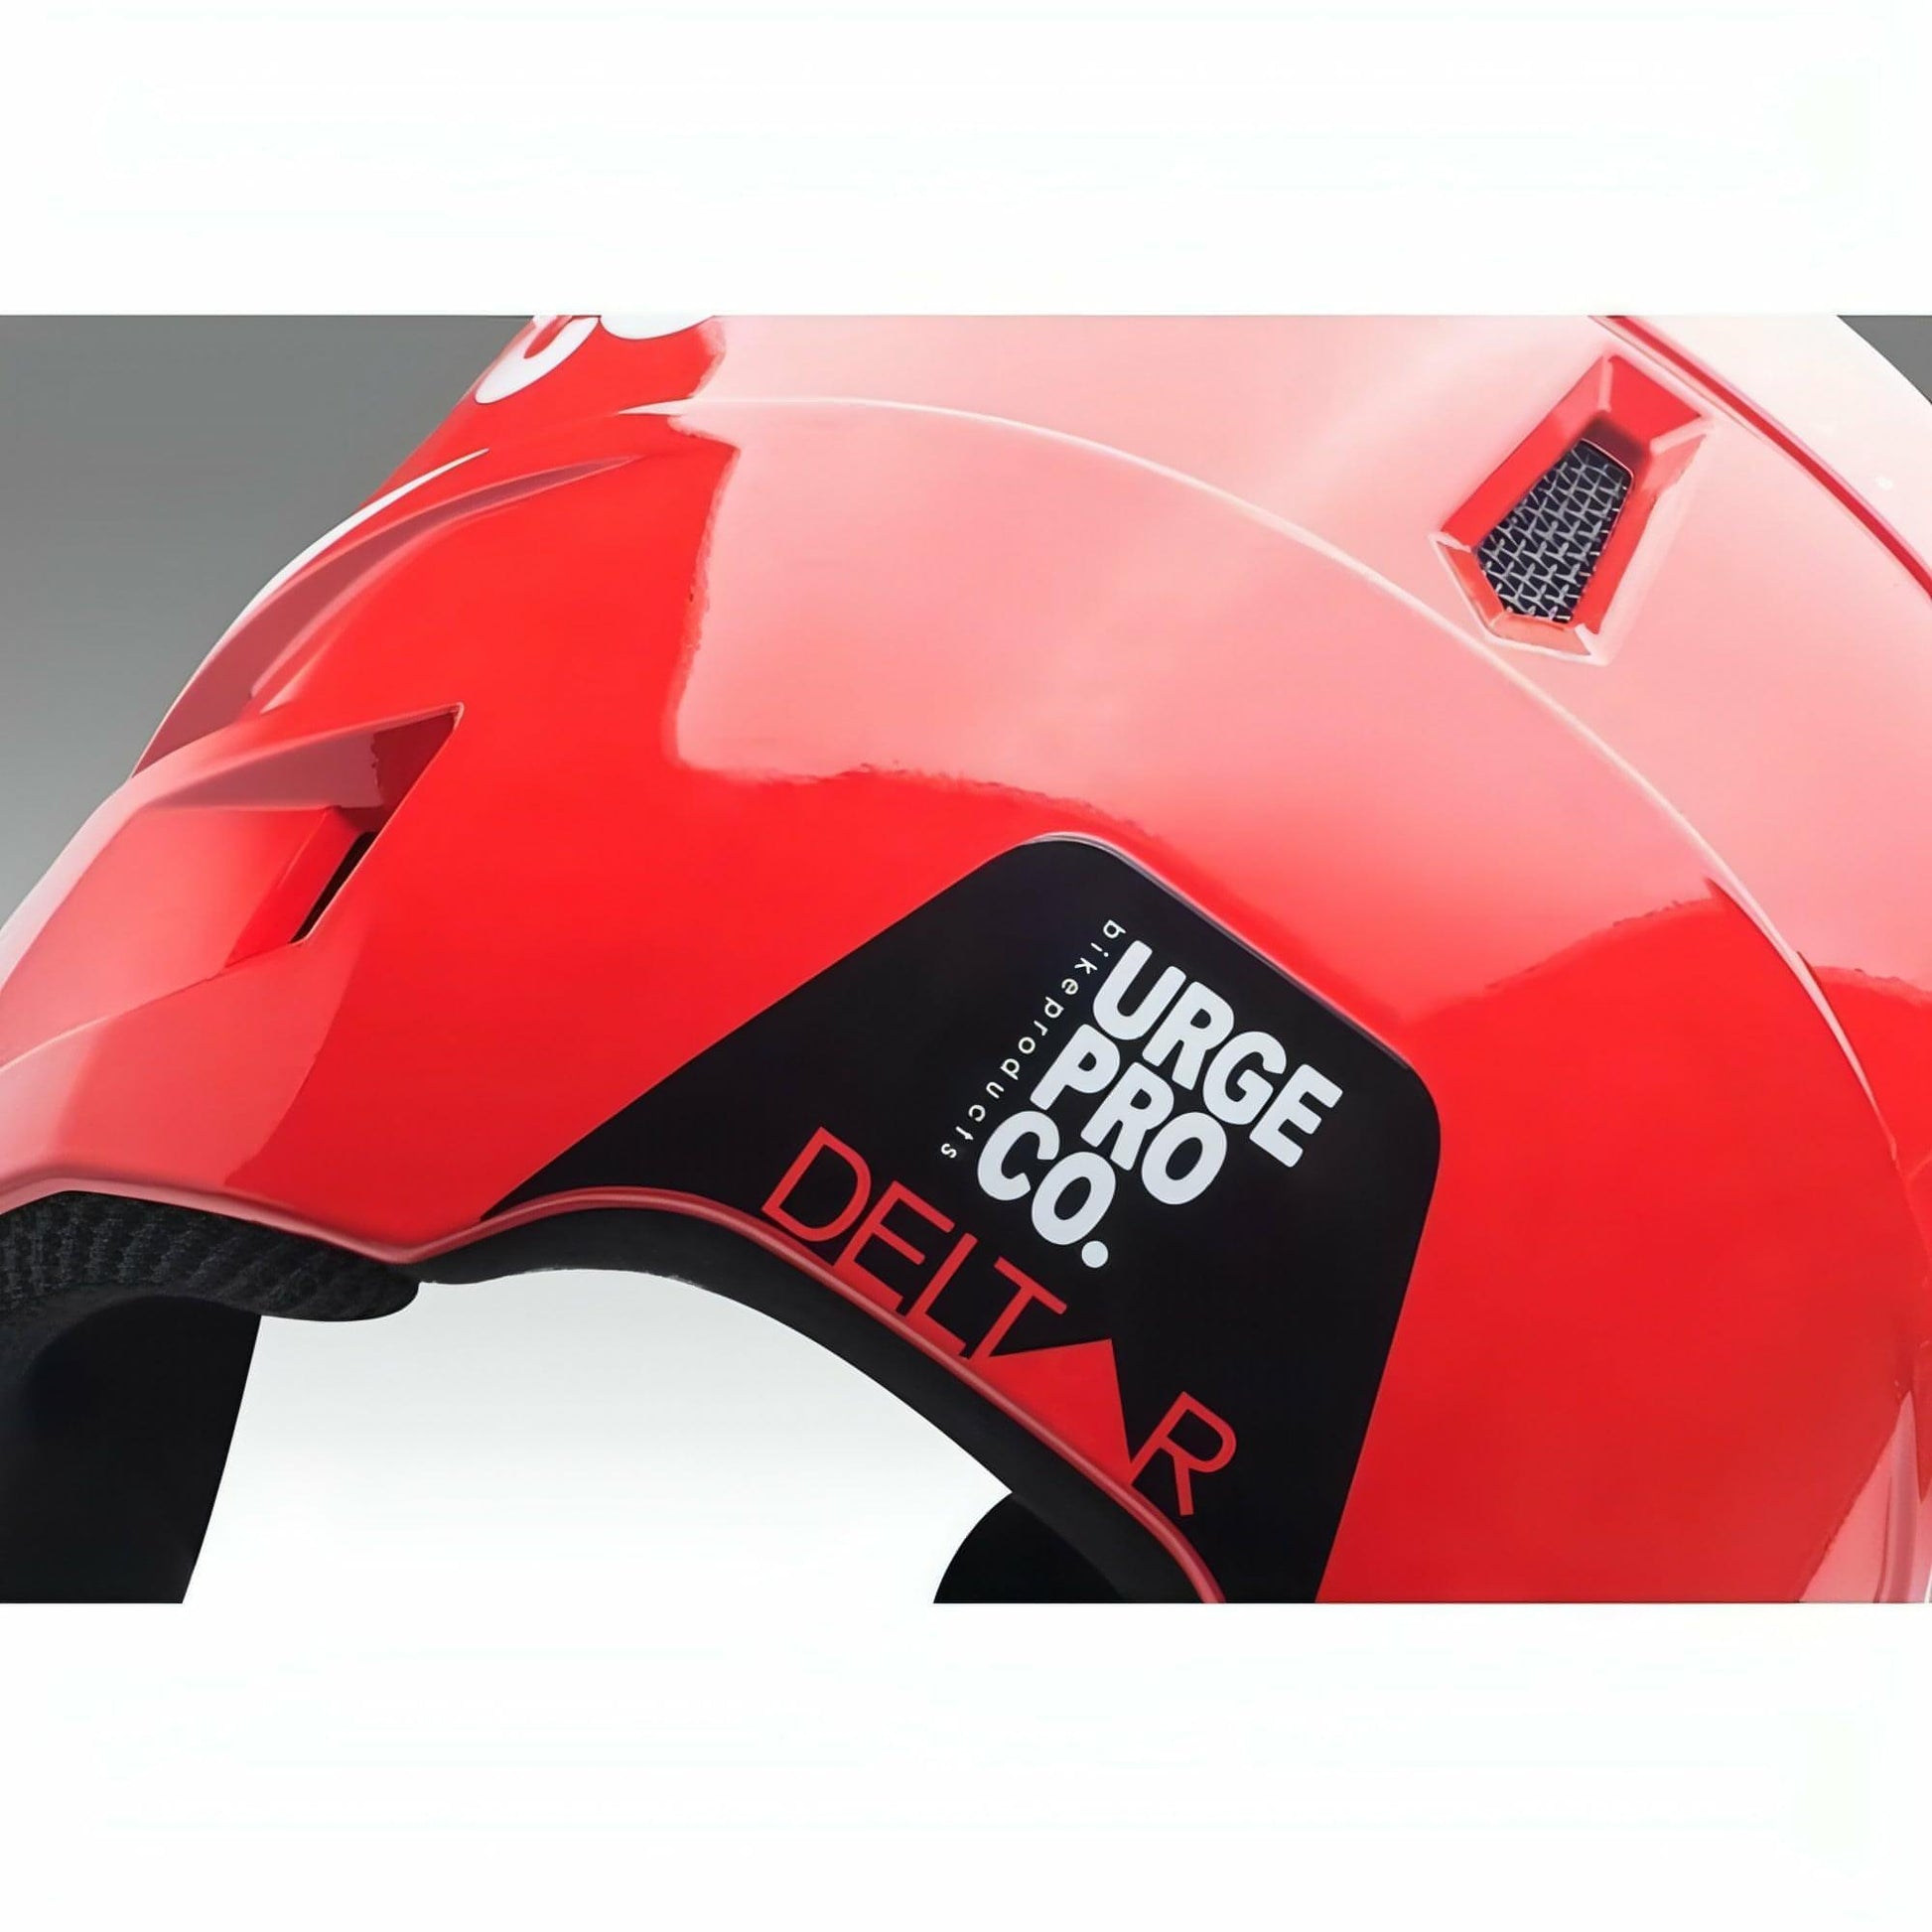 Urge Deltar Full Face MTB Cycling Helmet - Red - Start Fitness